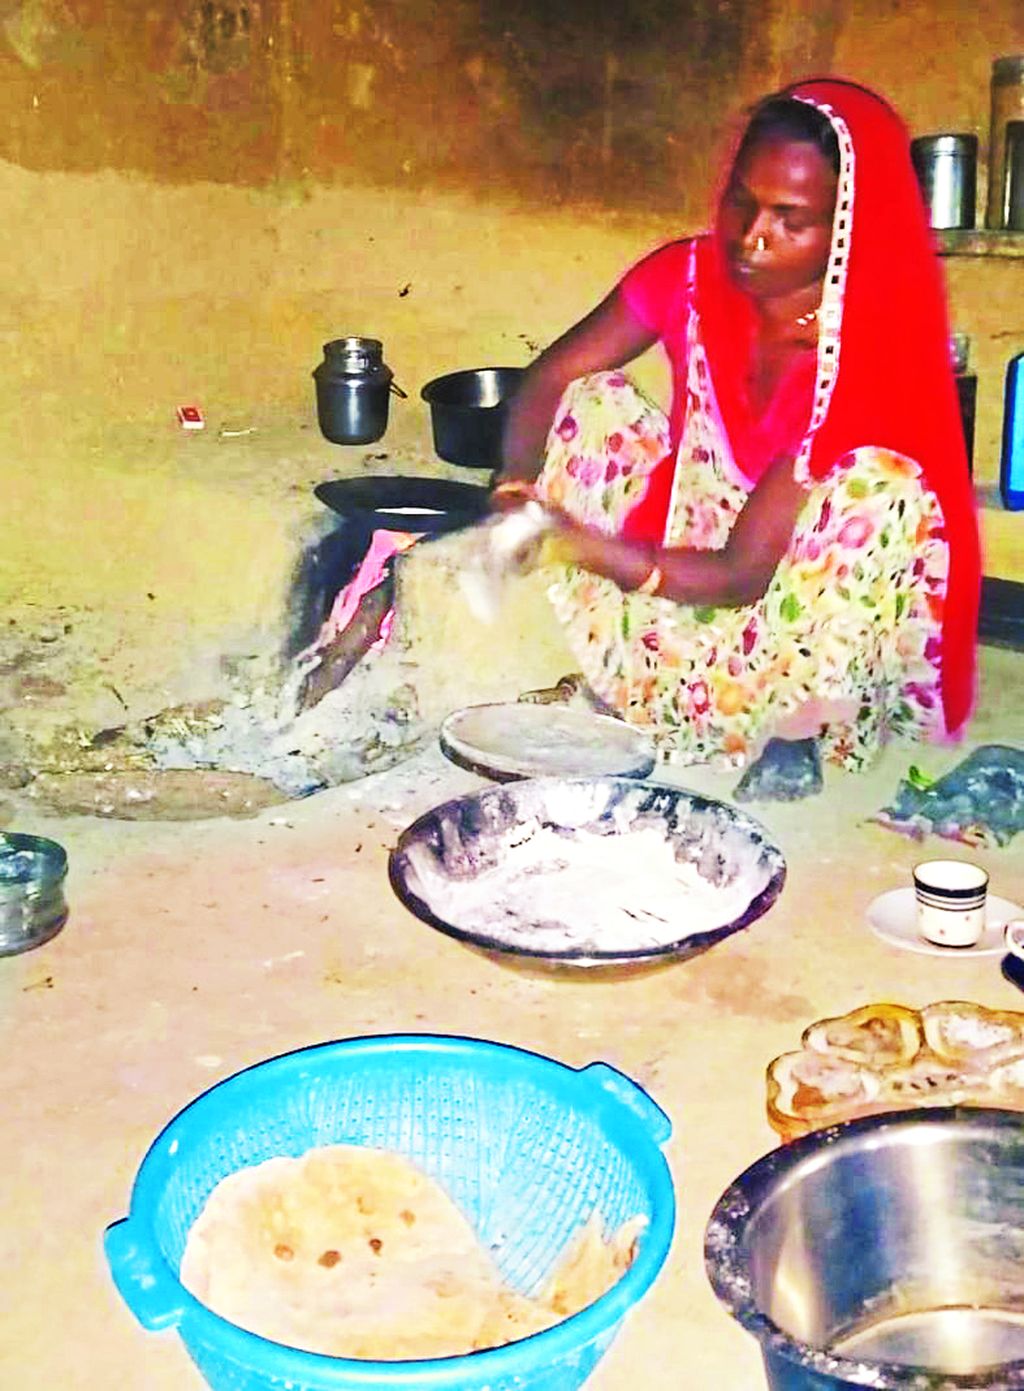 इस जिले के ग्रामीण क्षेत्रों में अब भी कई महिलाएं चूल्हा फूंकने को मजबूर